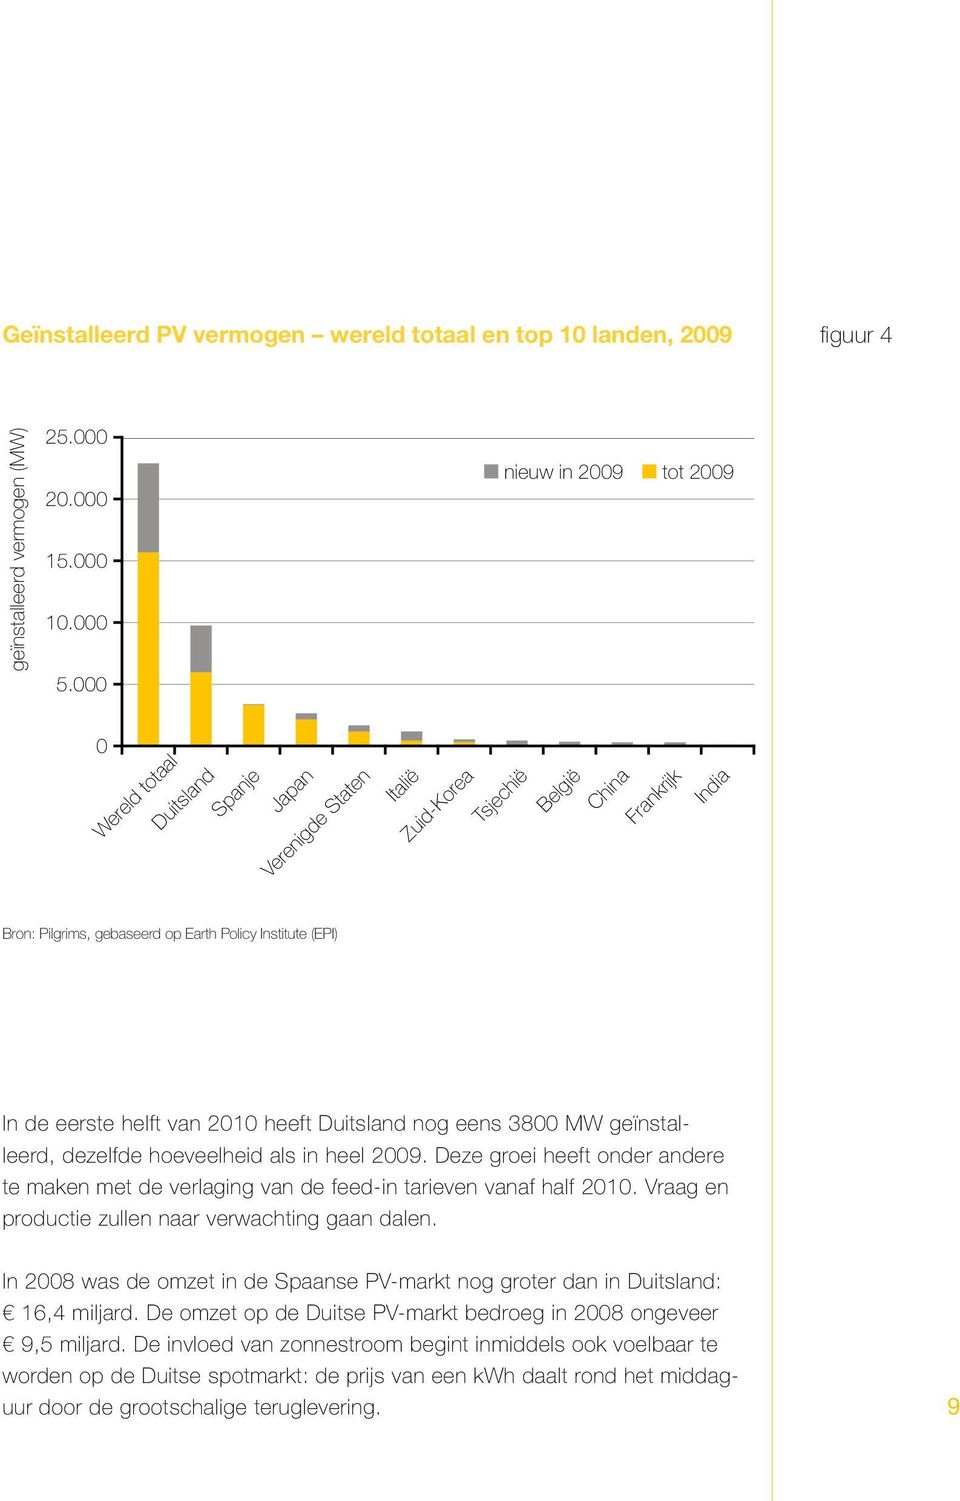 de eerste helft van 2010 heeft Duitsland nog eens 3800 MW geïnstalleerd, dezelfde hoeveelheid als in heel 2009.